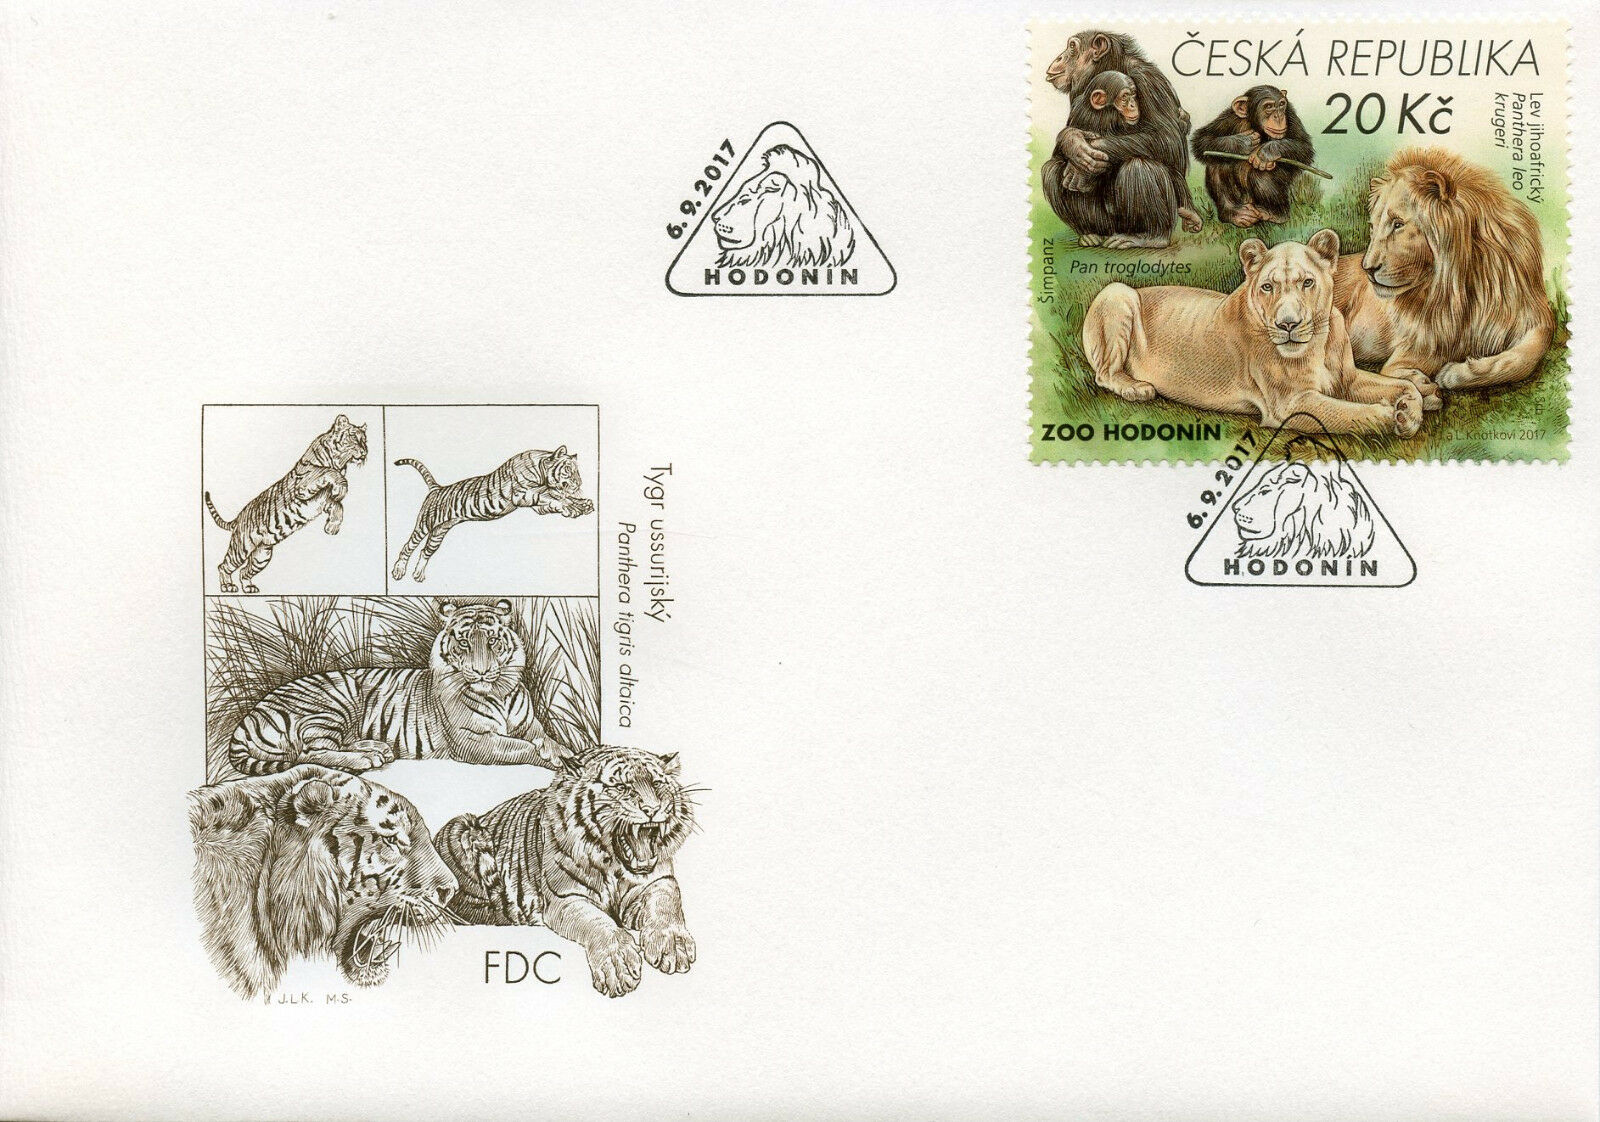 Czech Republic 2017 FDC Zoos II Hodonin Zoo Lions Monkeys 1v Set Cover II Stamps